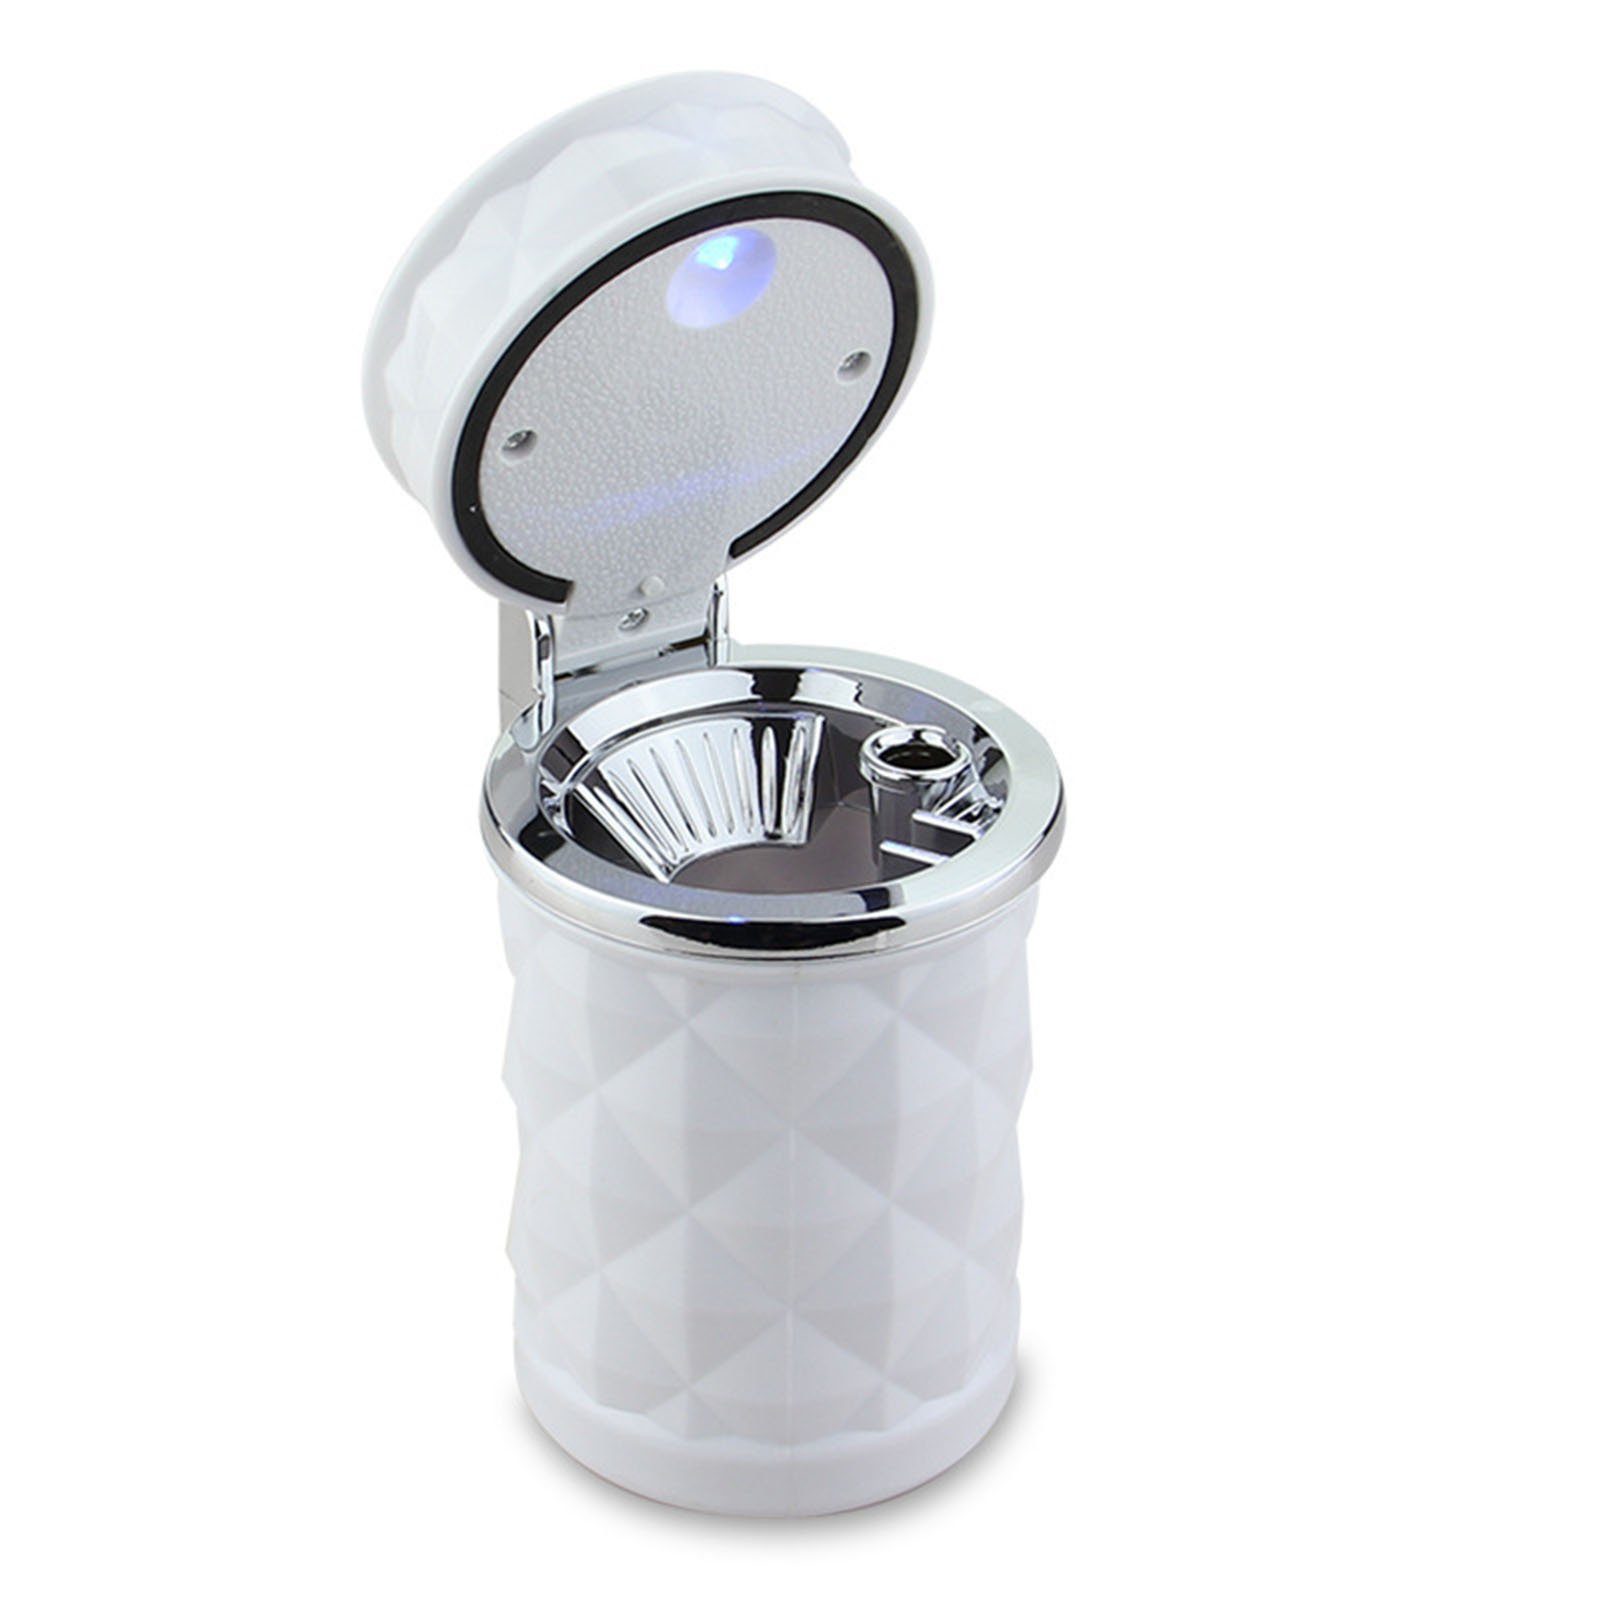 Mit diamond LED-Licht, Multifunktionale, Aschenbecher white Blusmart Auto-Aschenbecher Abnehmbare